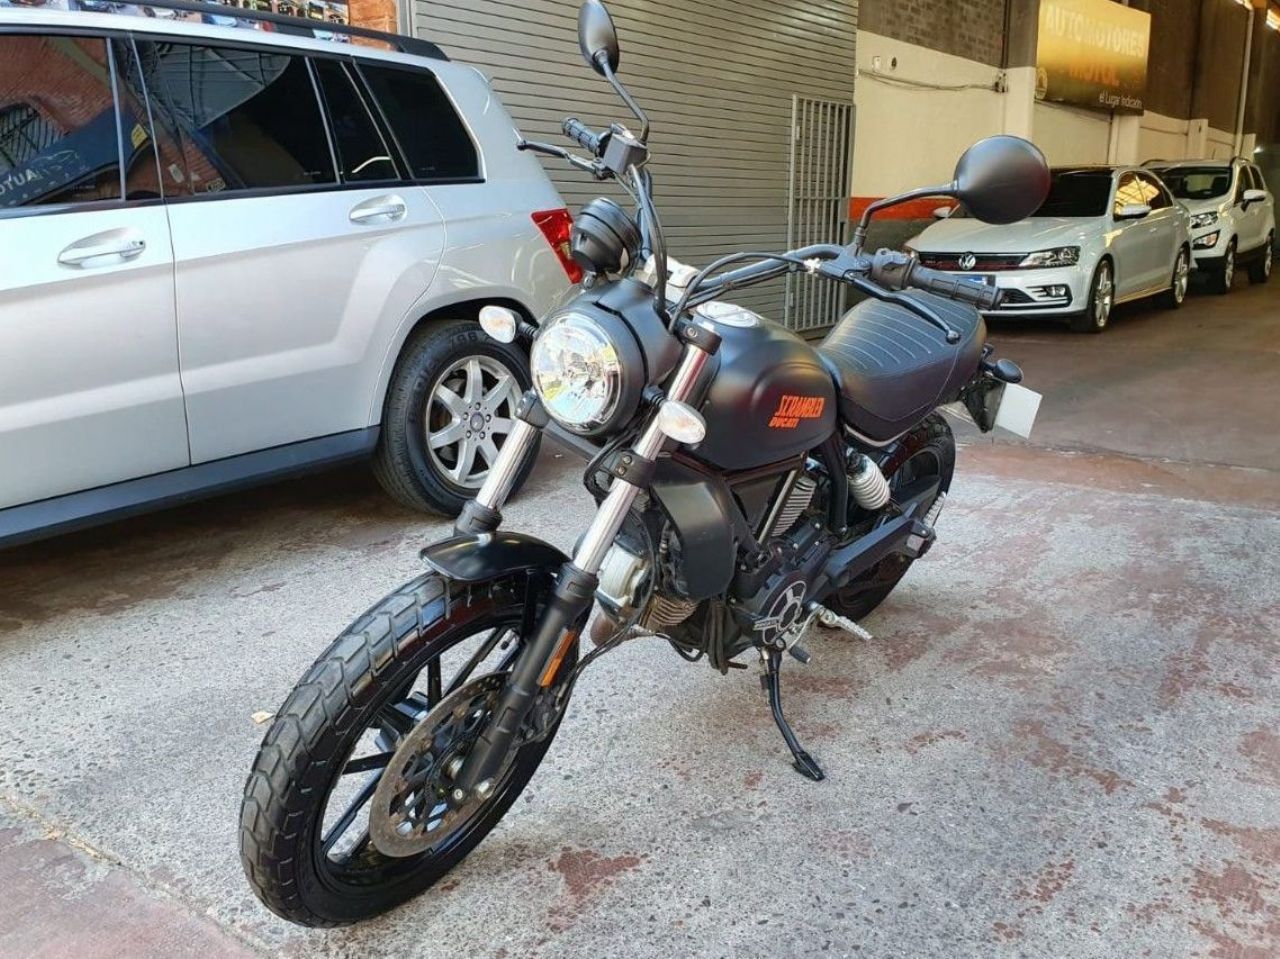 Ducati Scrambler Usada en Mendoza, deRuedas